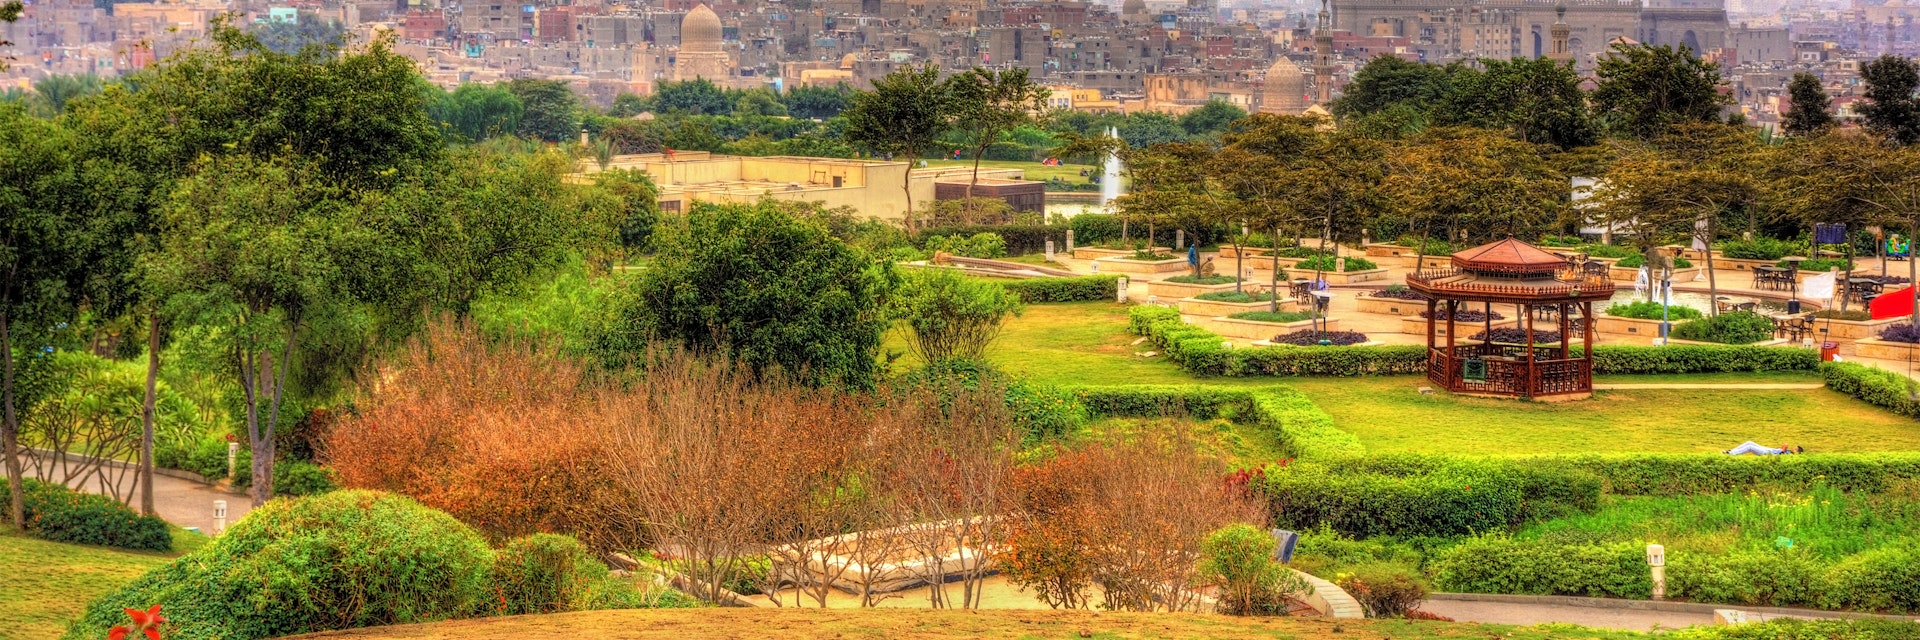 View of the Citadel from Al-Azhar Park